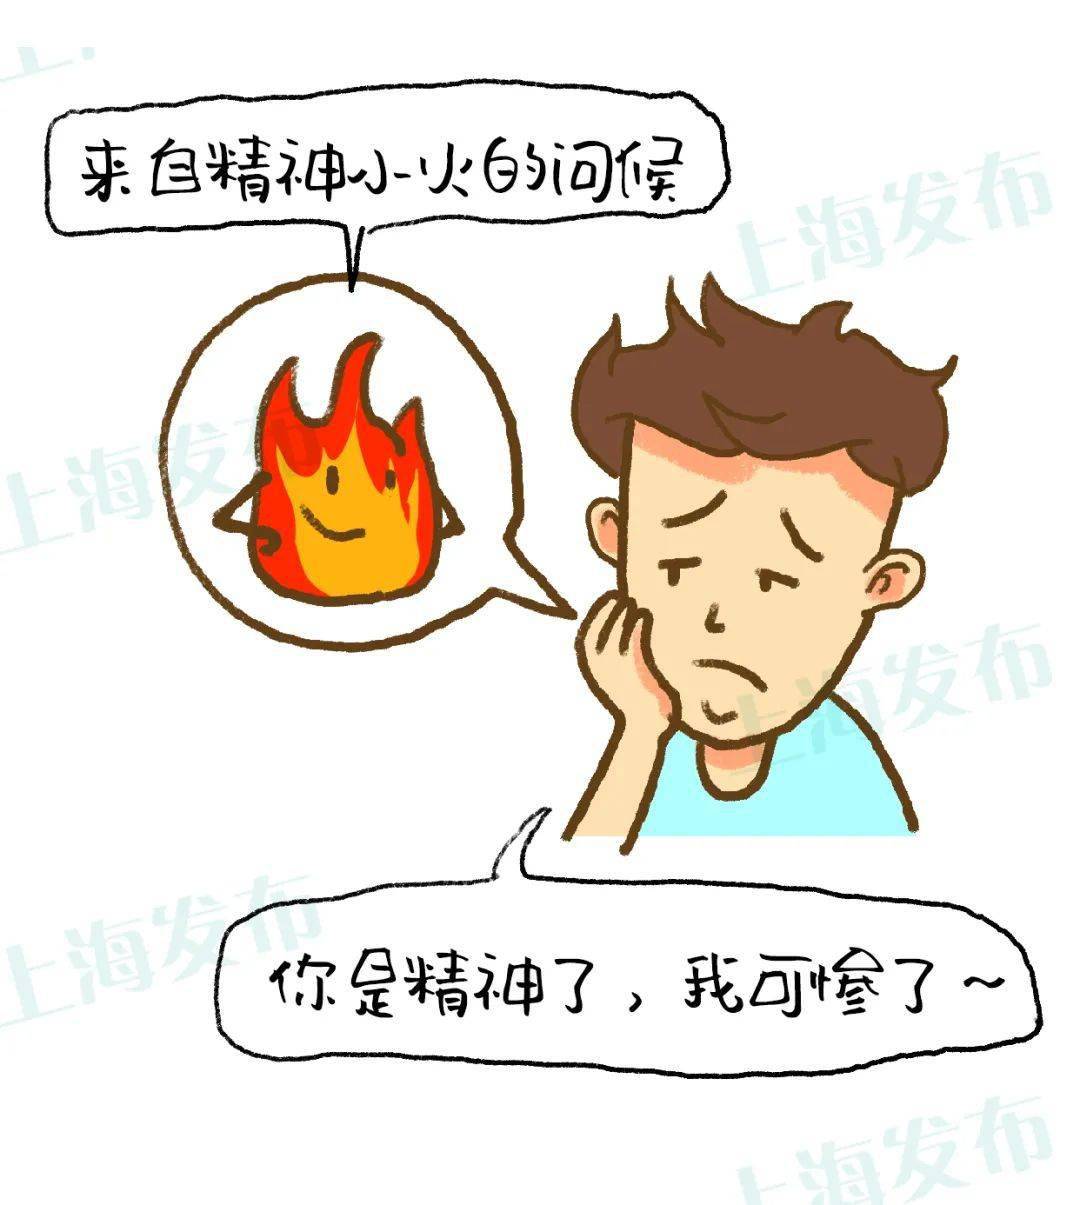 【曙光·科普】为啥口腔溃疡被称为"上火"?"火"有话要